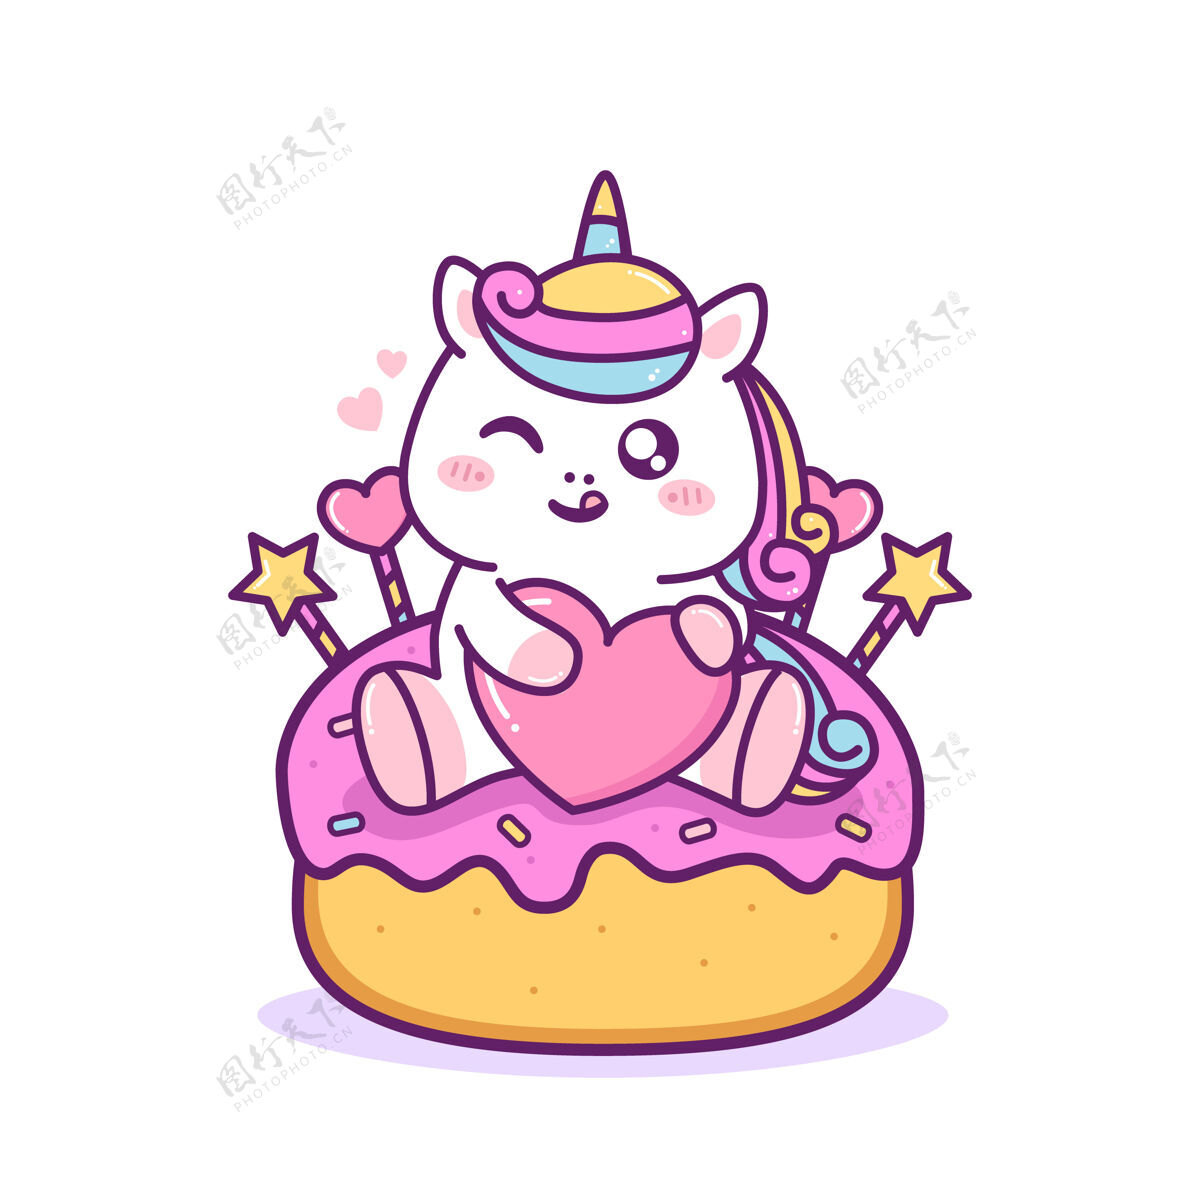 爱可爱快乐的独角兽坐在蛋糕上宠物吉祥物动物